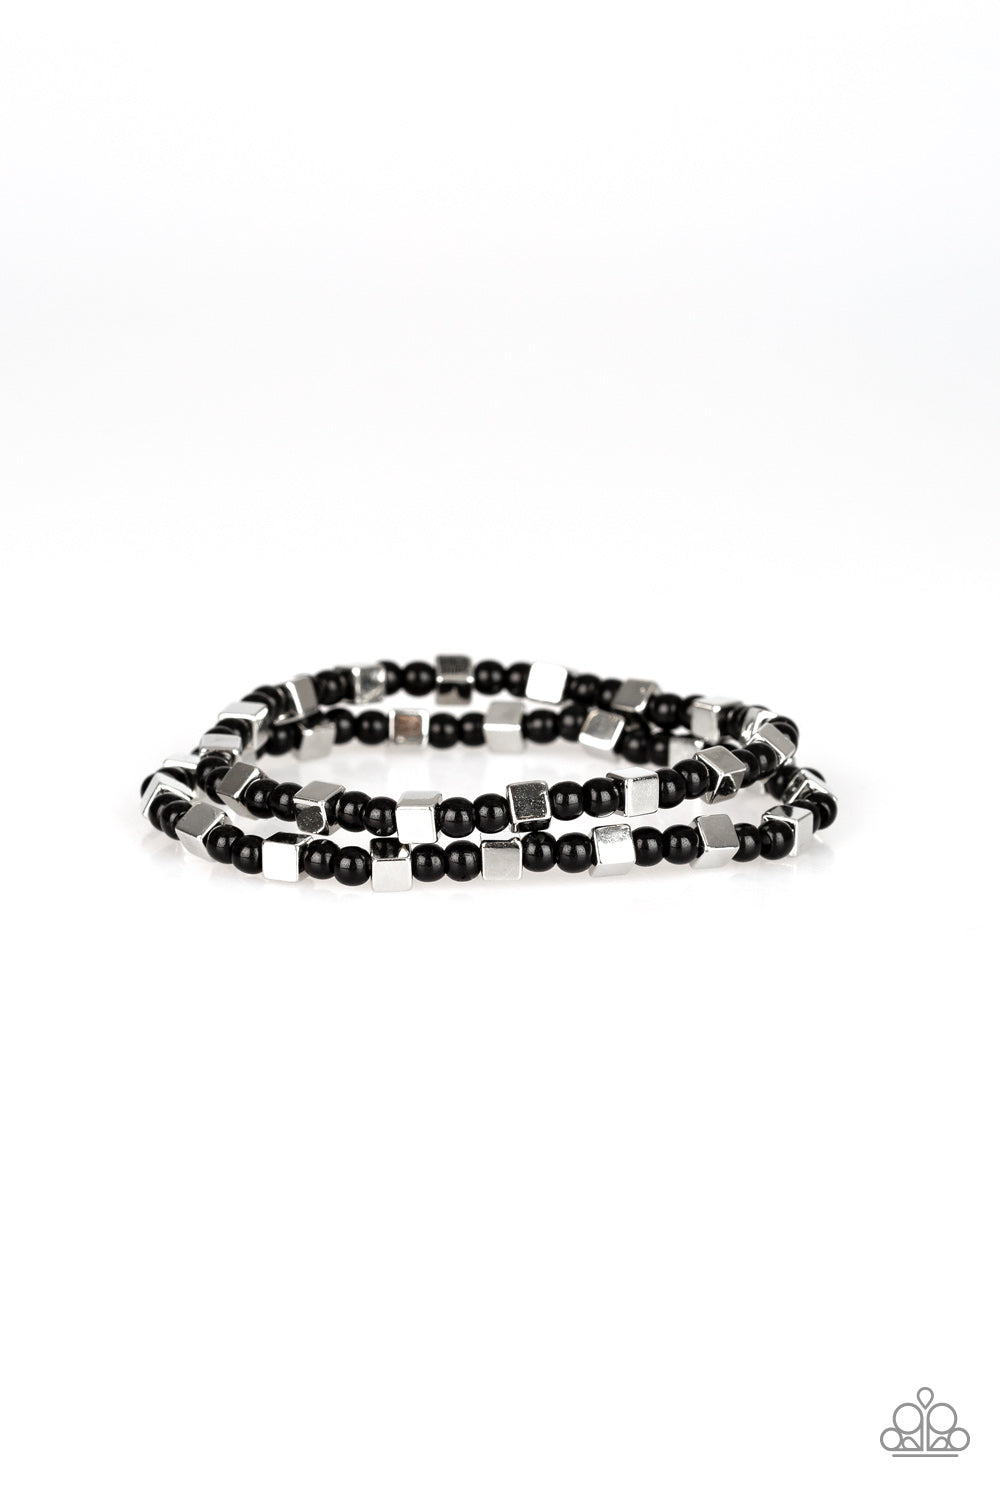 Paparazzi Trendy Tribalist - Black Beads - Bracelets - $5 Jewelry With Ashley Swint